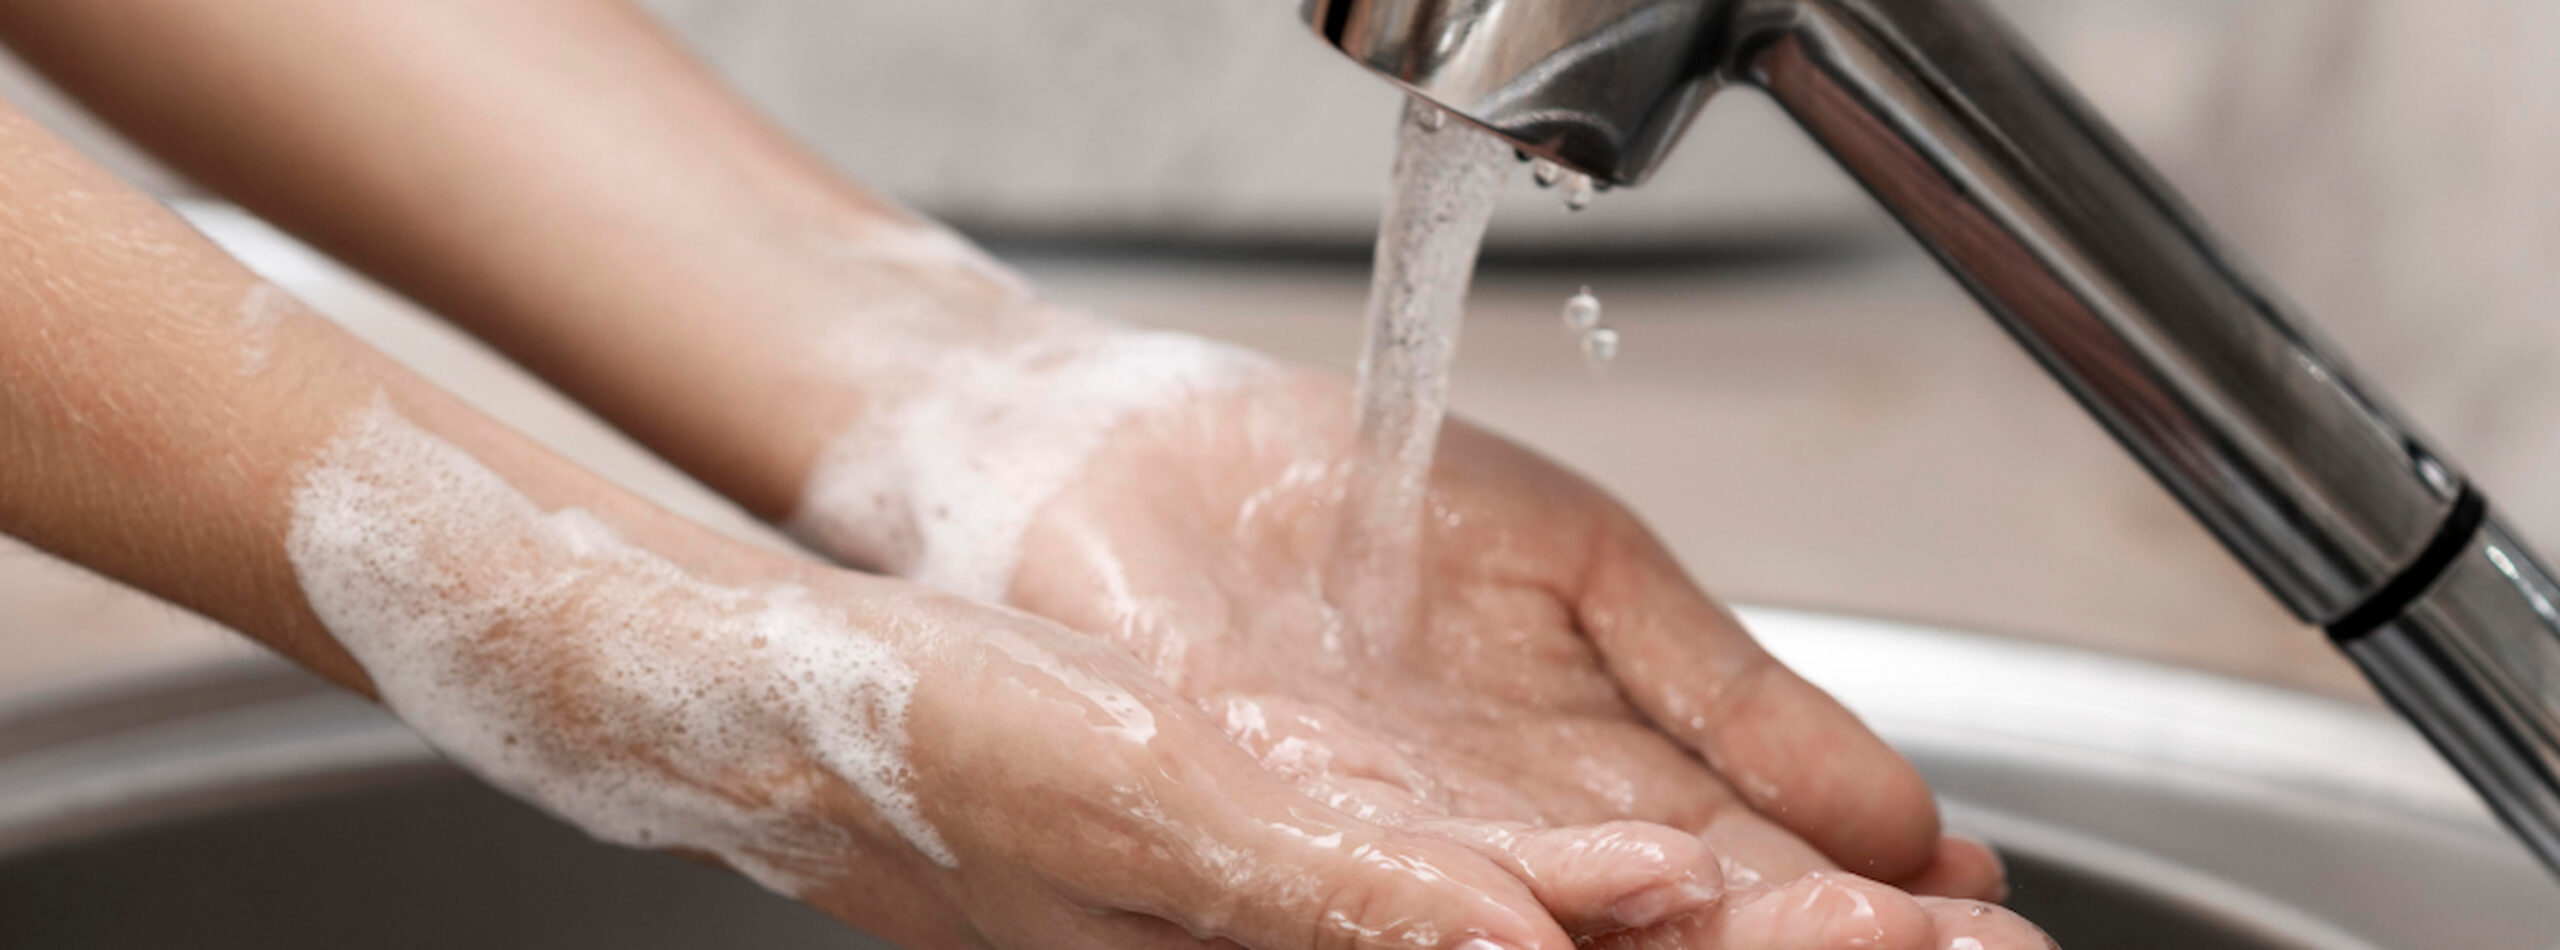 Aquecedor de torneira: água quente na torneira de forma fácil